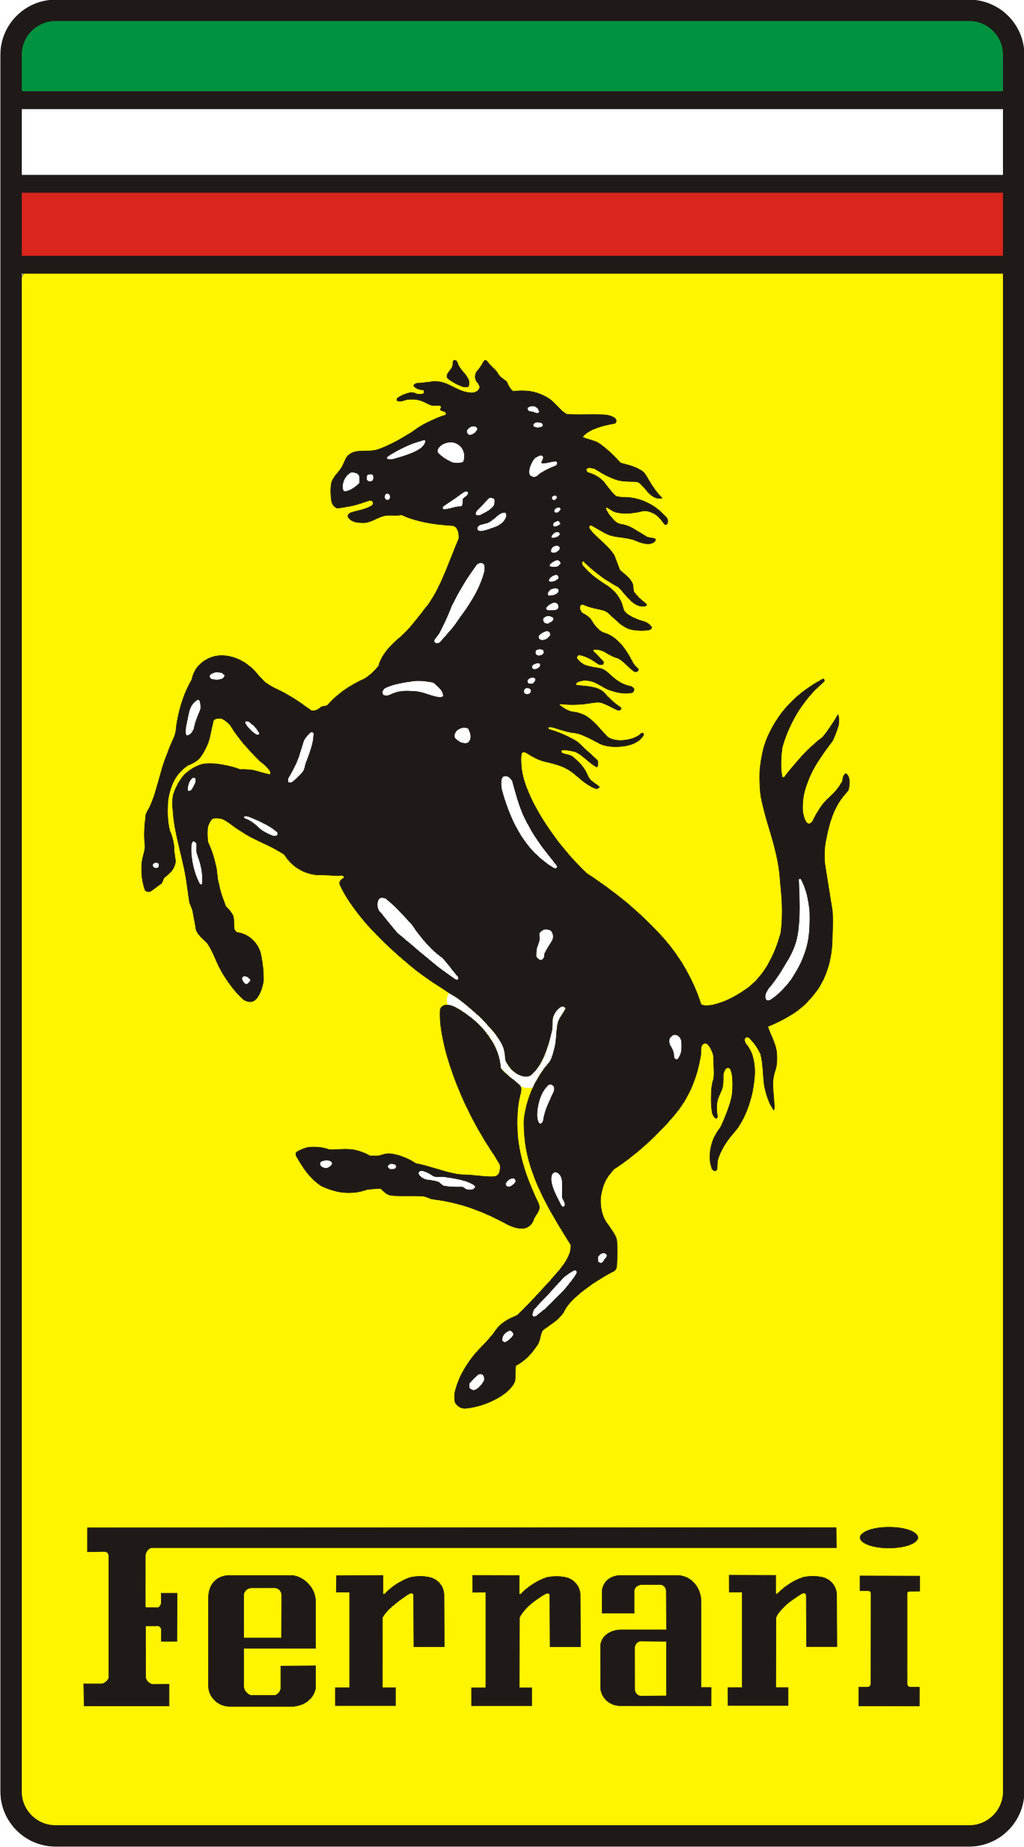 Cavallino Rampante montato sulle vetture Ferrari di serie.